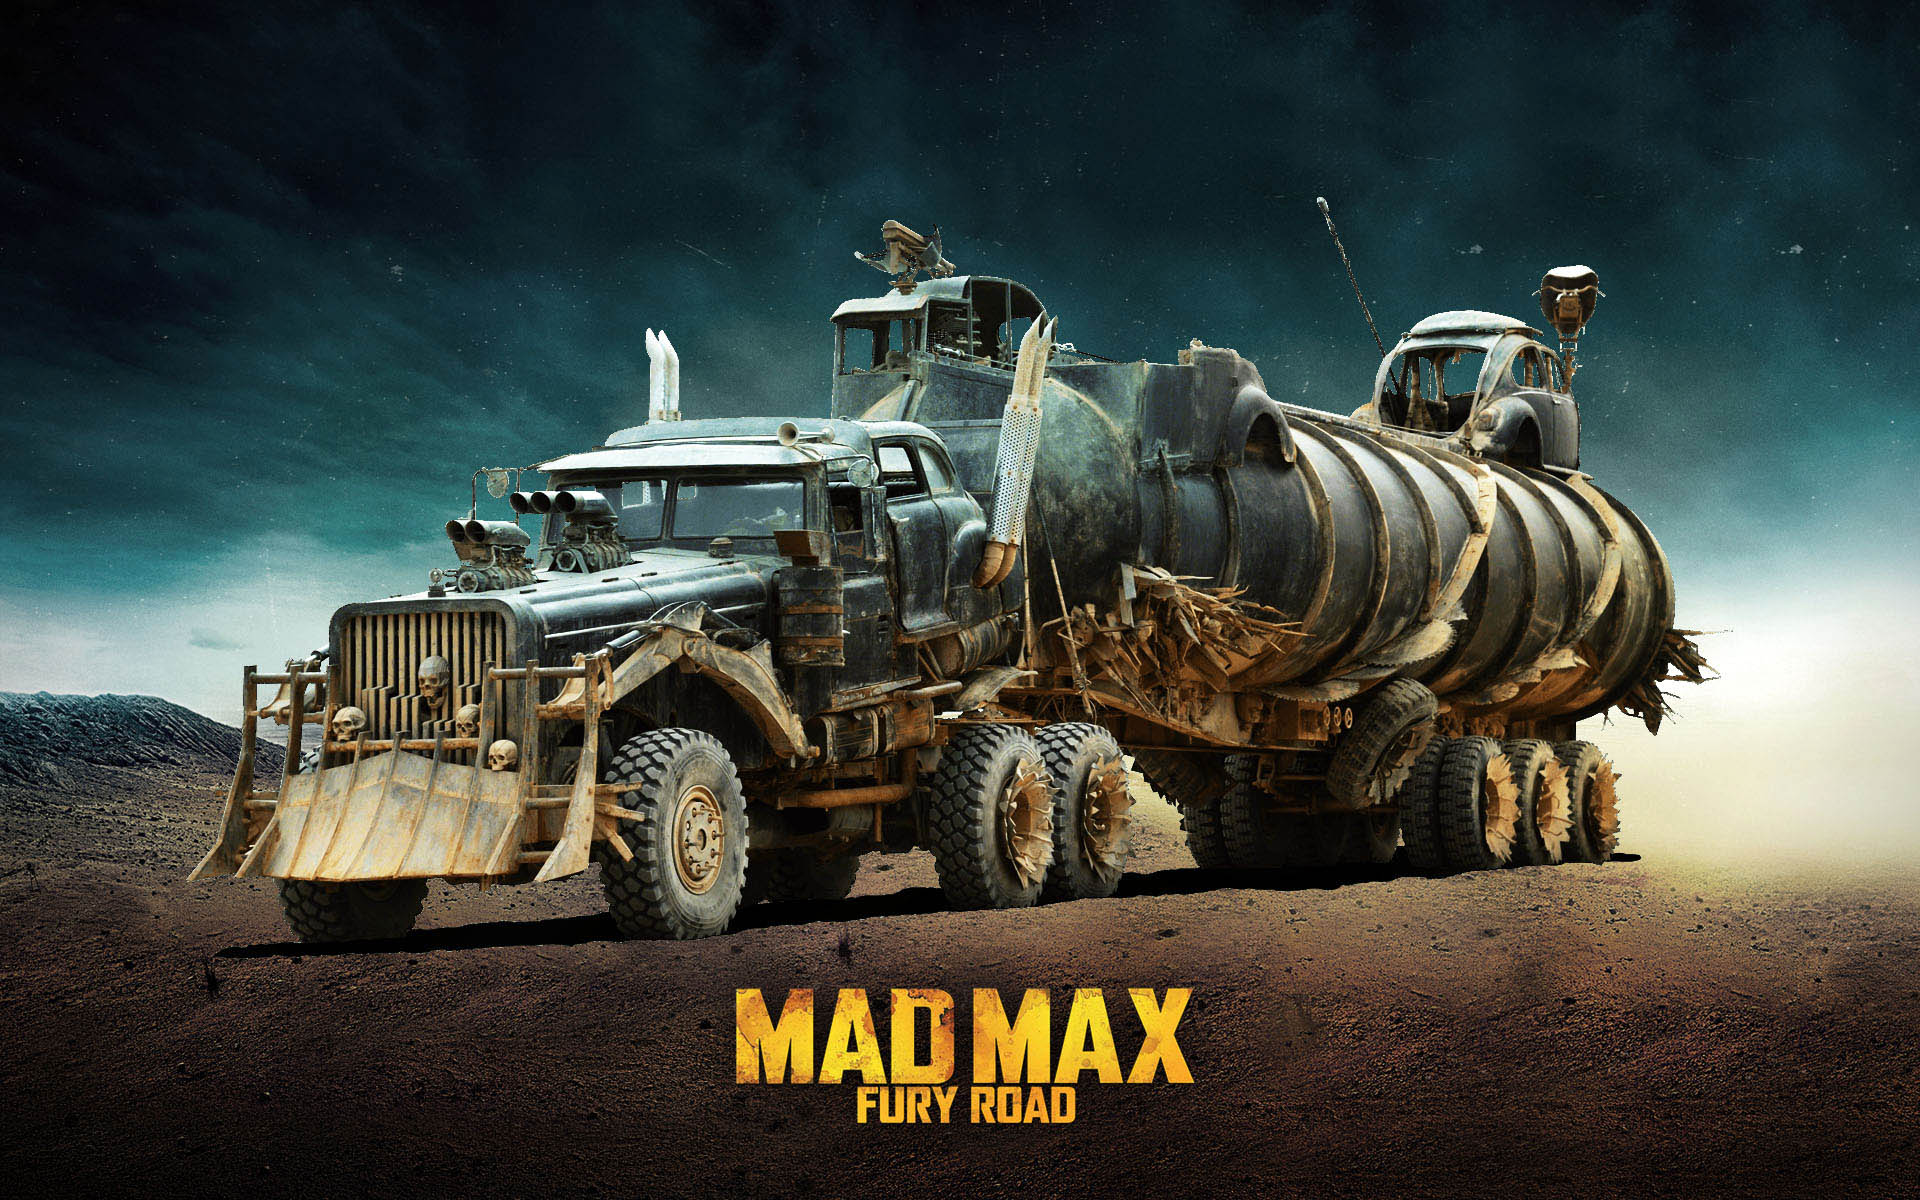  War Rig based on Tatra T815   Mad Max Fury Road 1920x1200 wallpaper